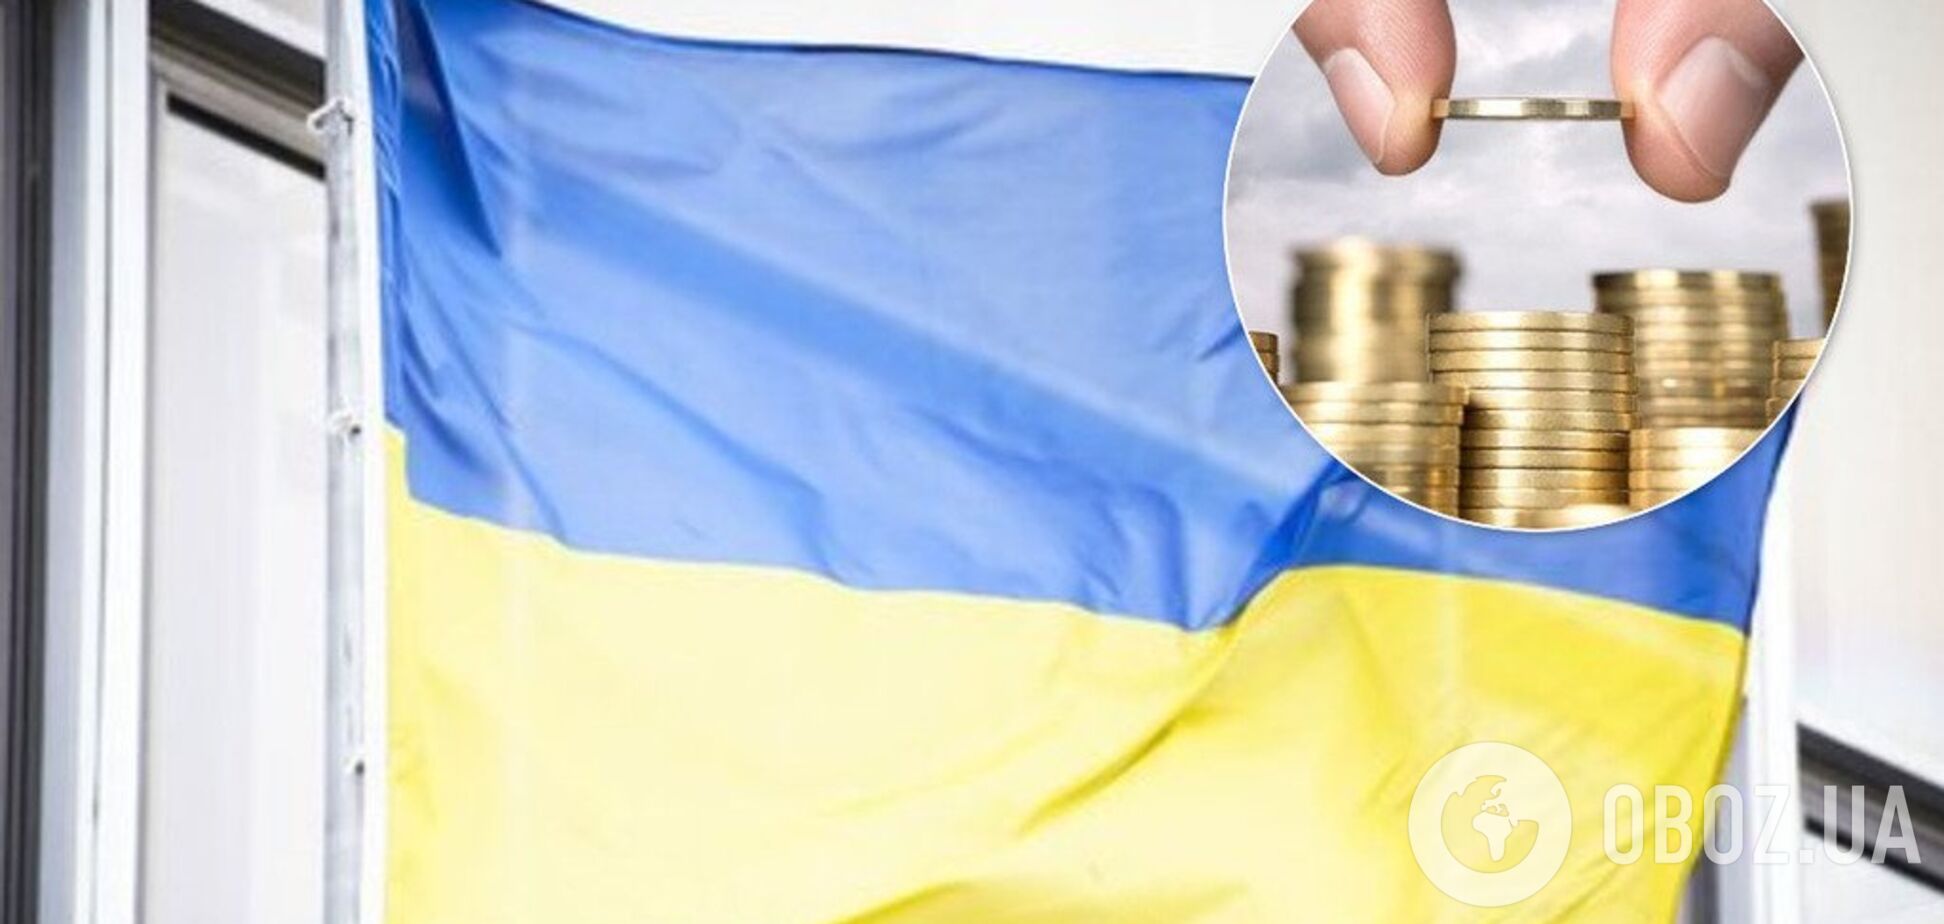 Каждый украинец уже должен по 50 тысяч, а власти возьмут новый кредит на 250 млн евро